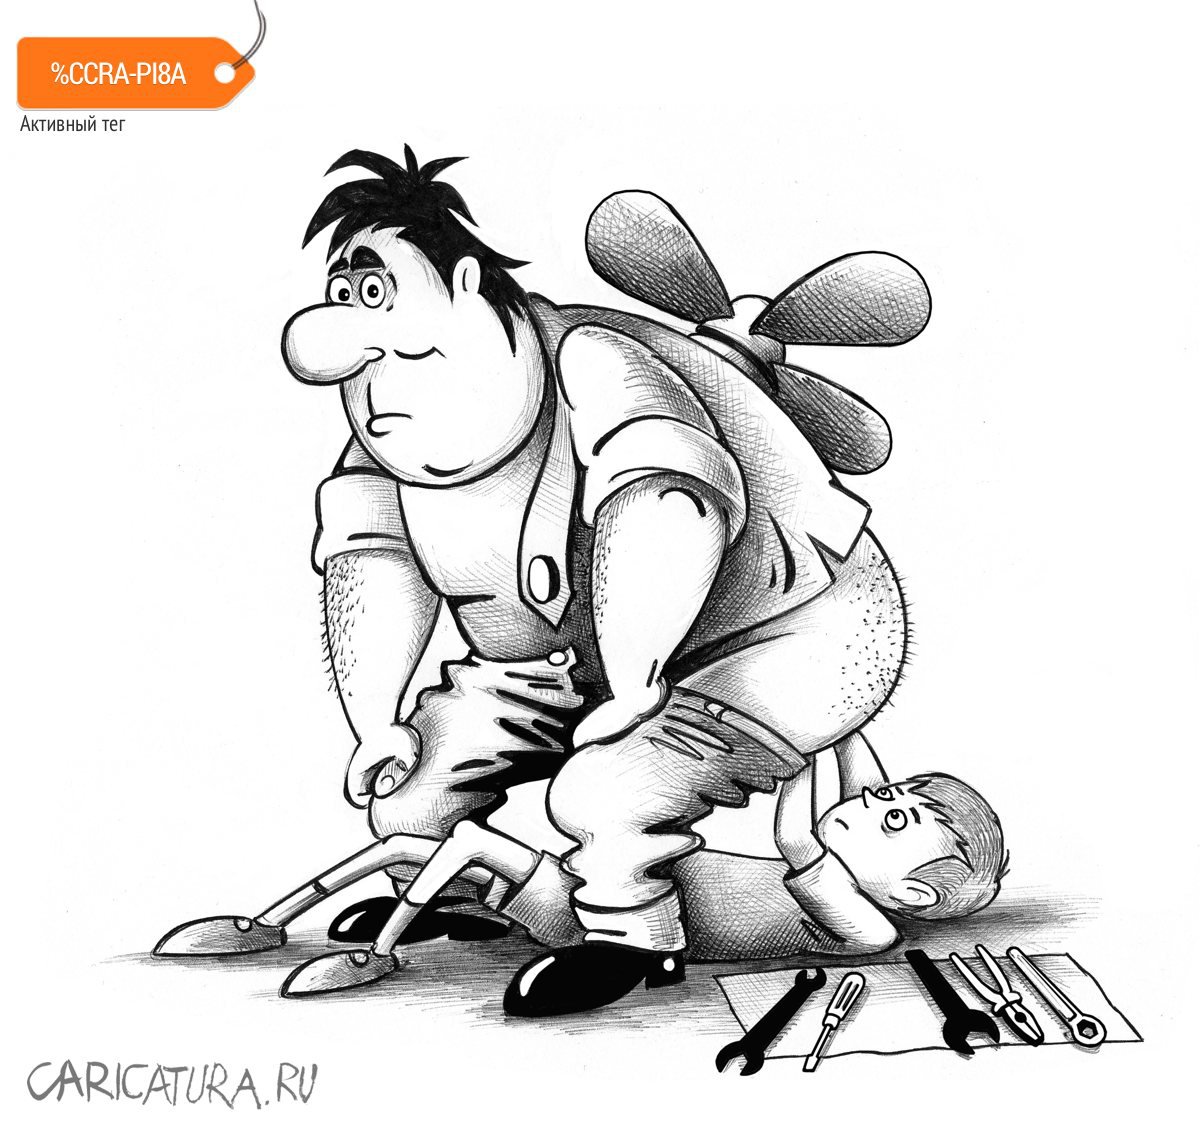 Карикатура "Ремонт", Сергей Корсун